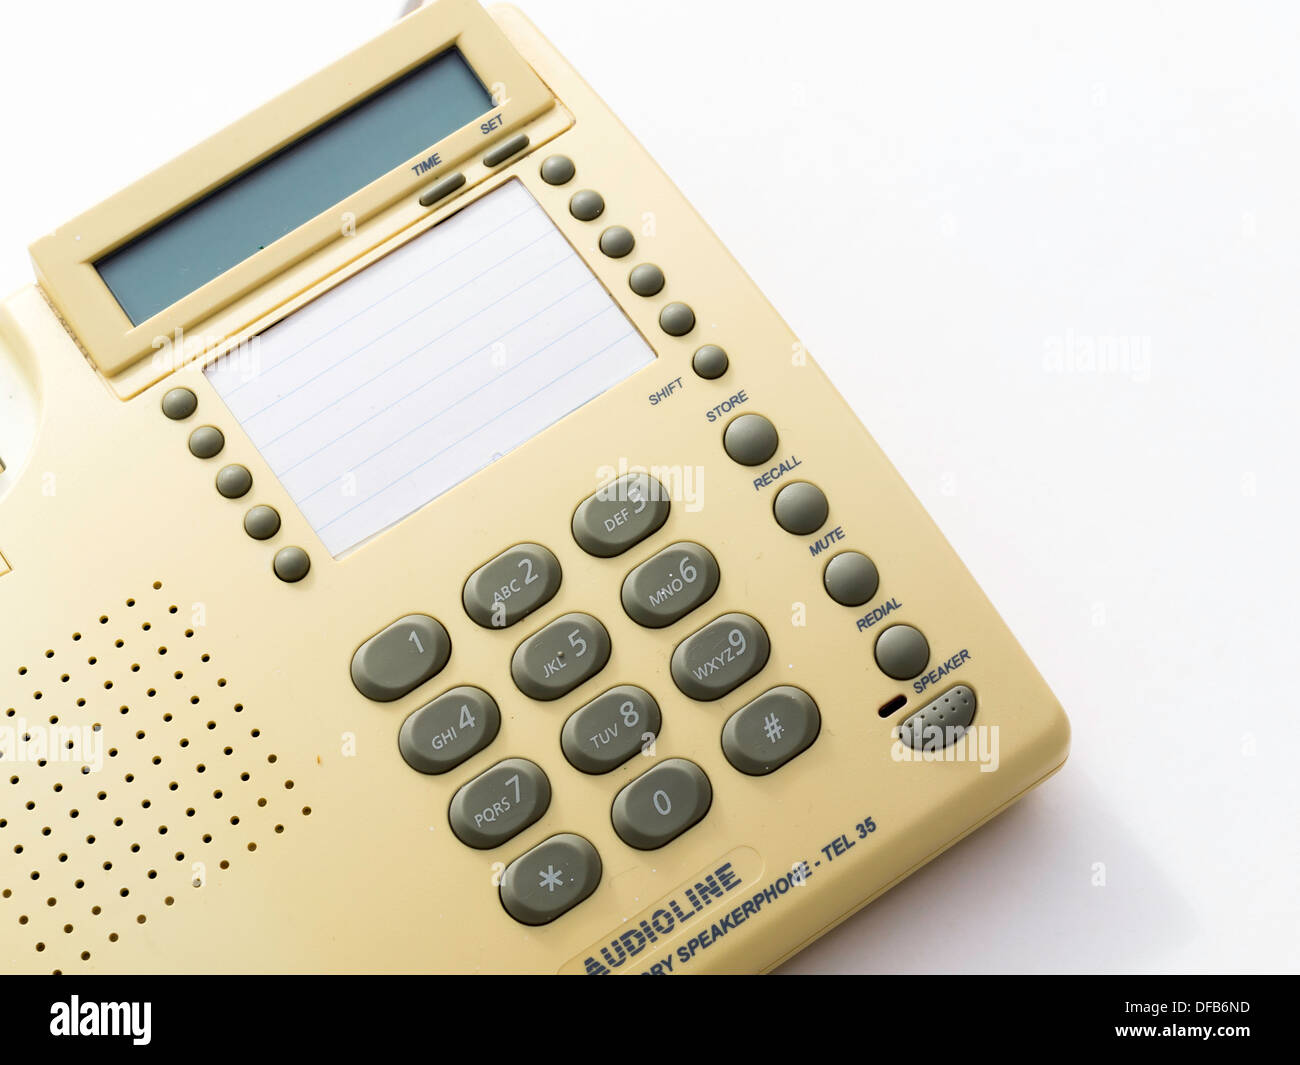 Bouton poussoir BT Audioline téléphone haut-parleur utilisé à la fin des années 1980 Banque D'Images